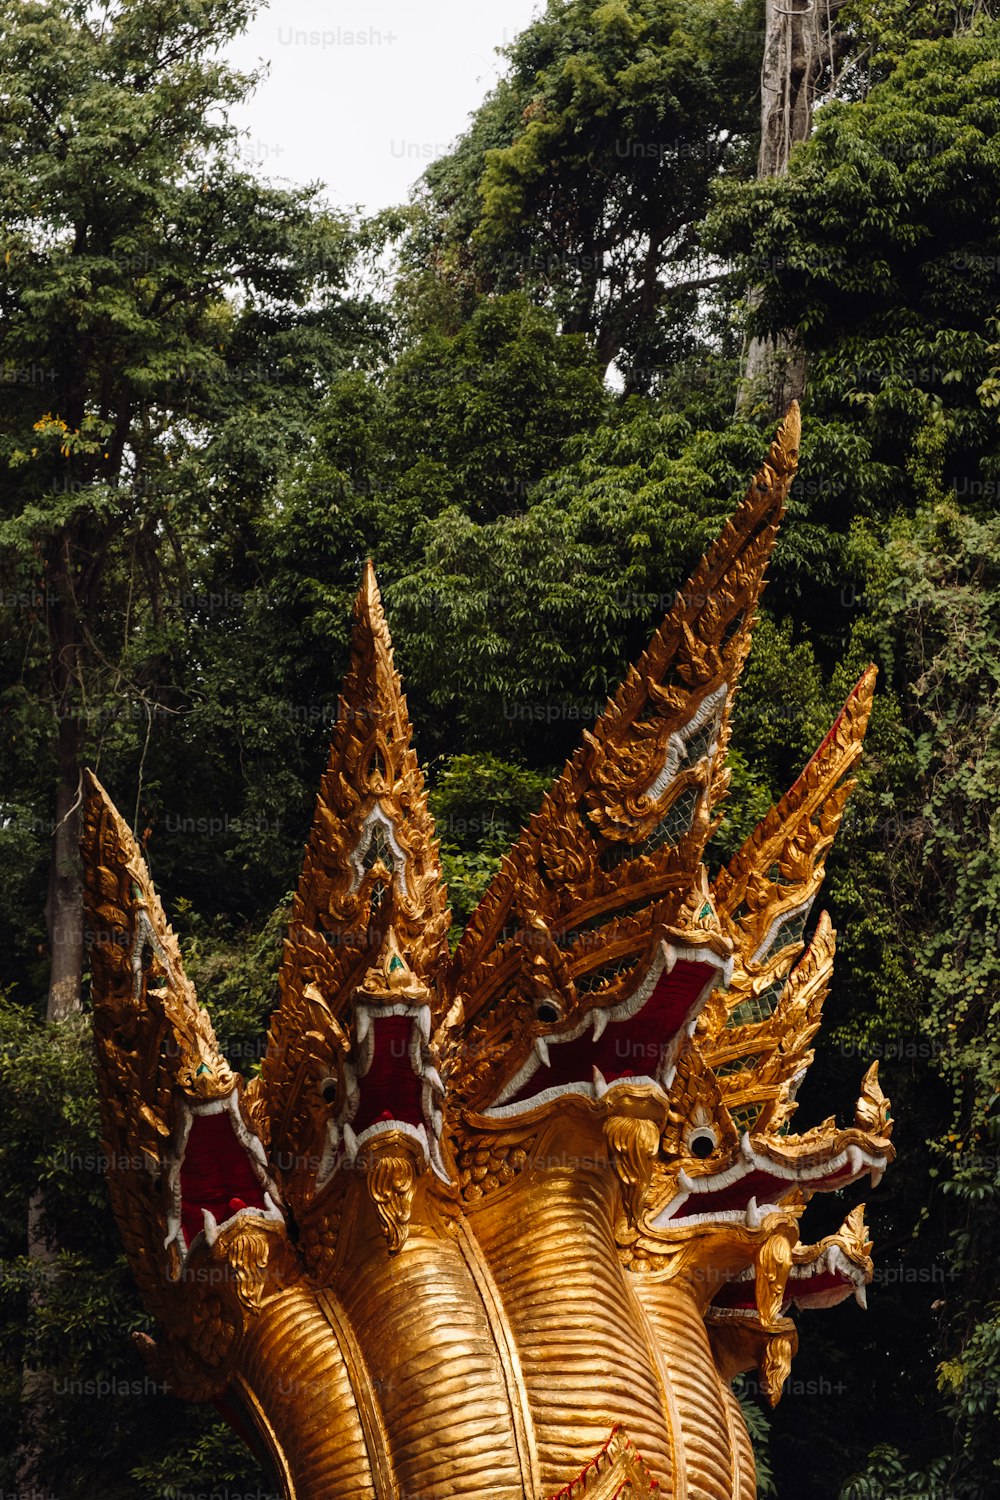 Una gran estatua de dragón dorado frente a un bosque